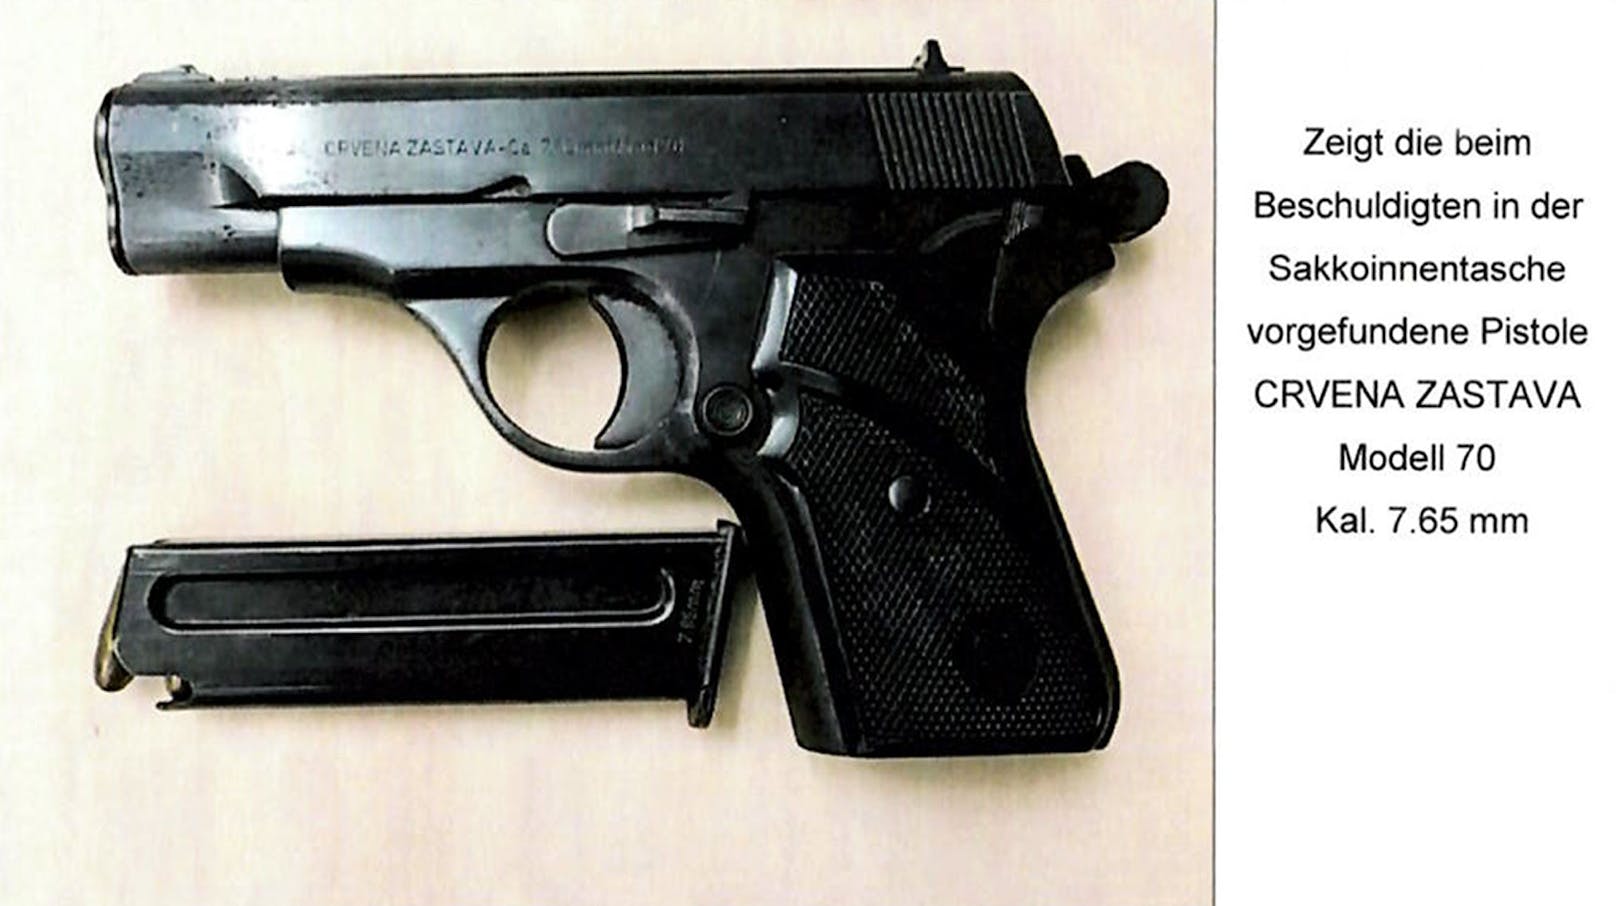 Bei der Festnahme des 43-Jährigen fanden die Beamten diese Waffe.